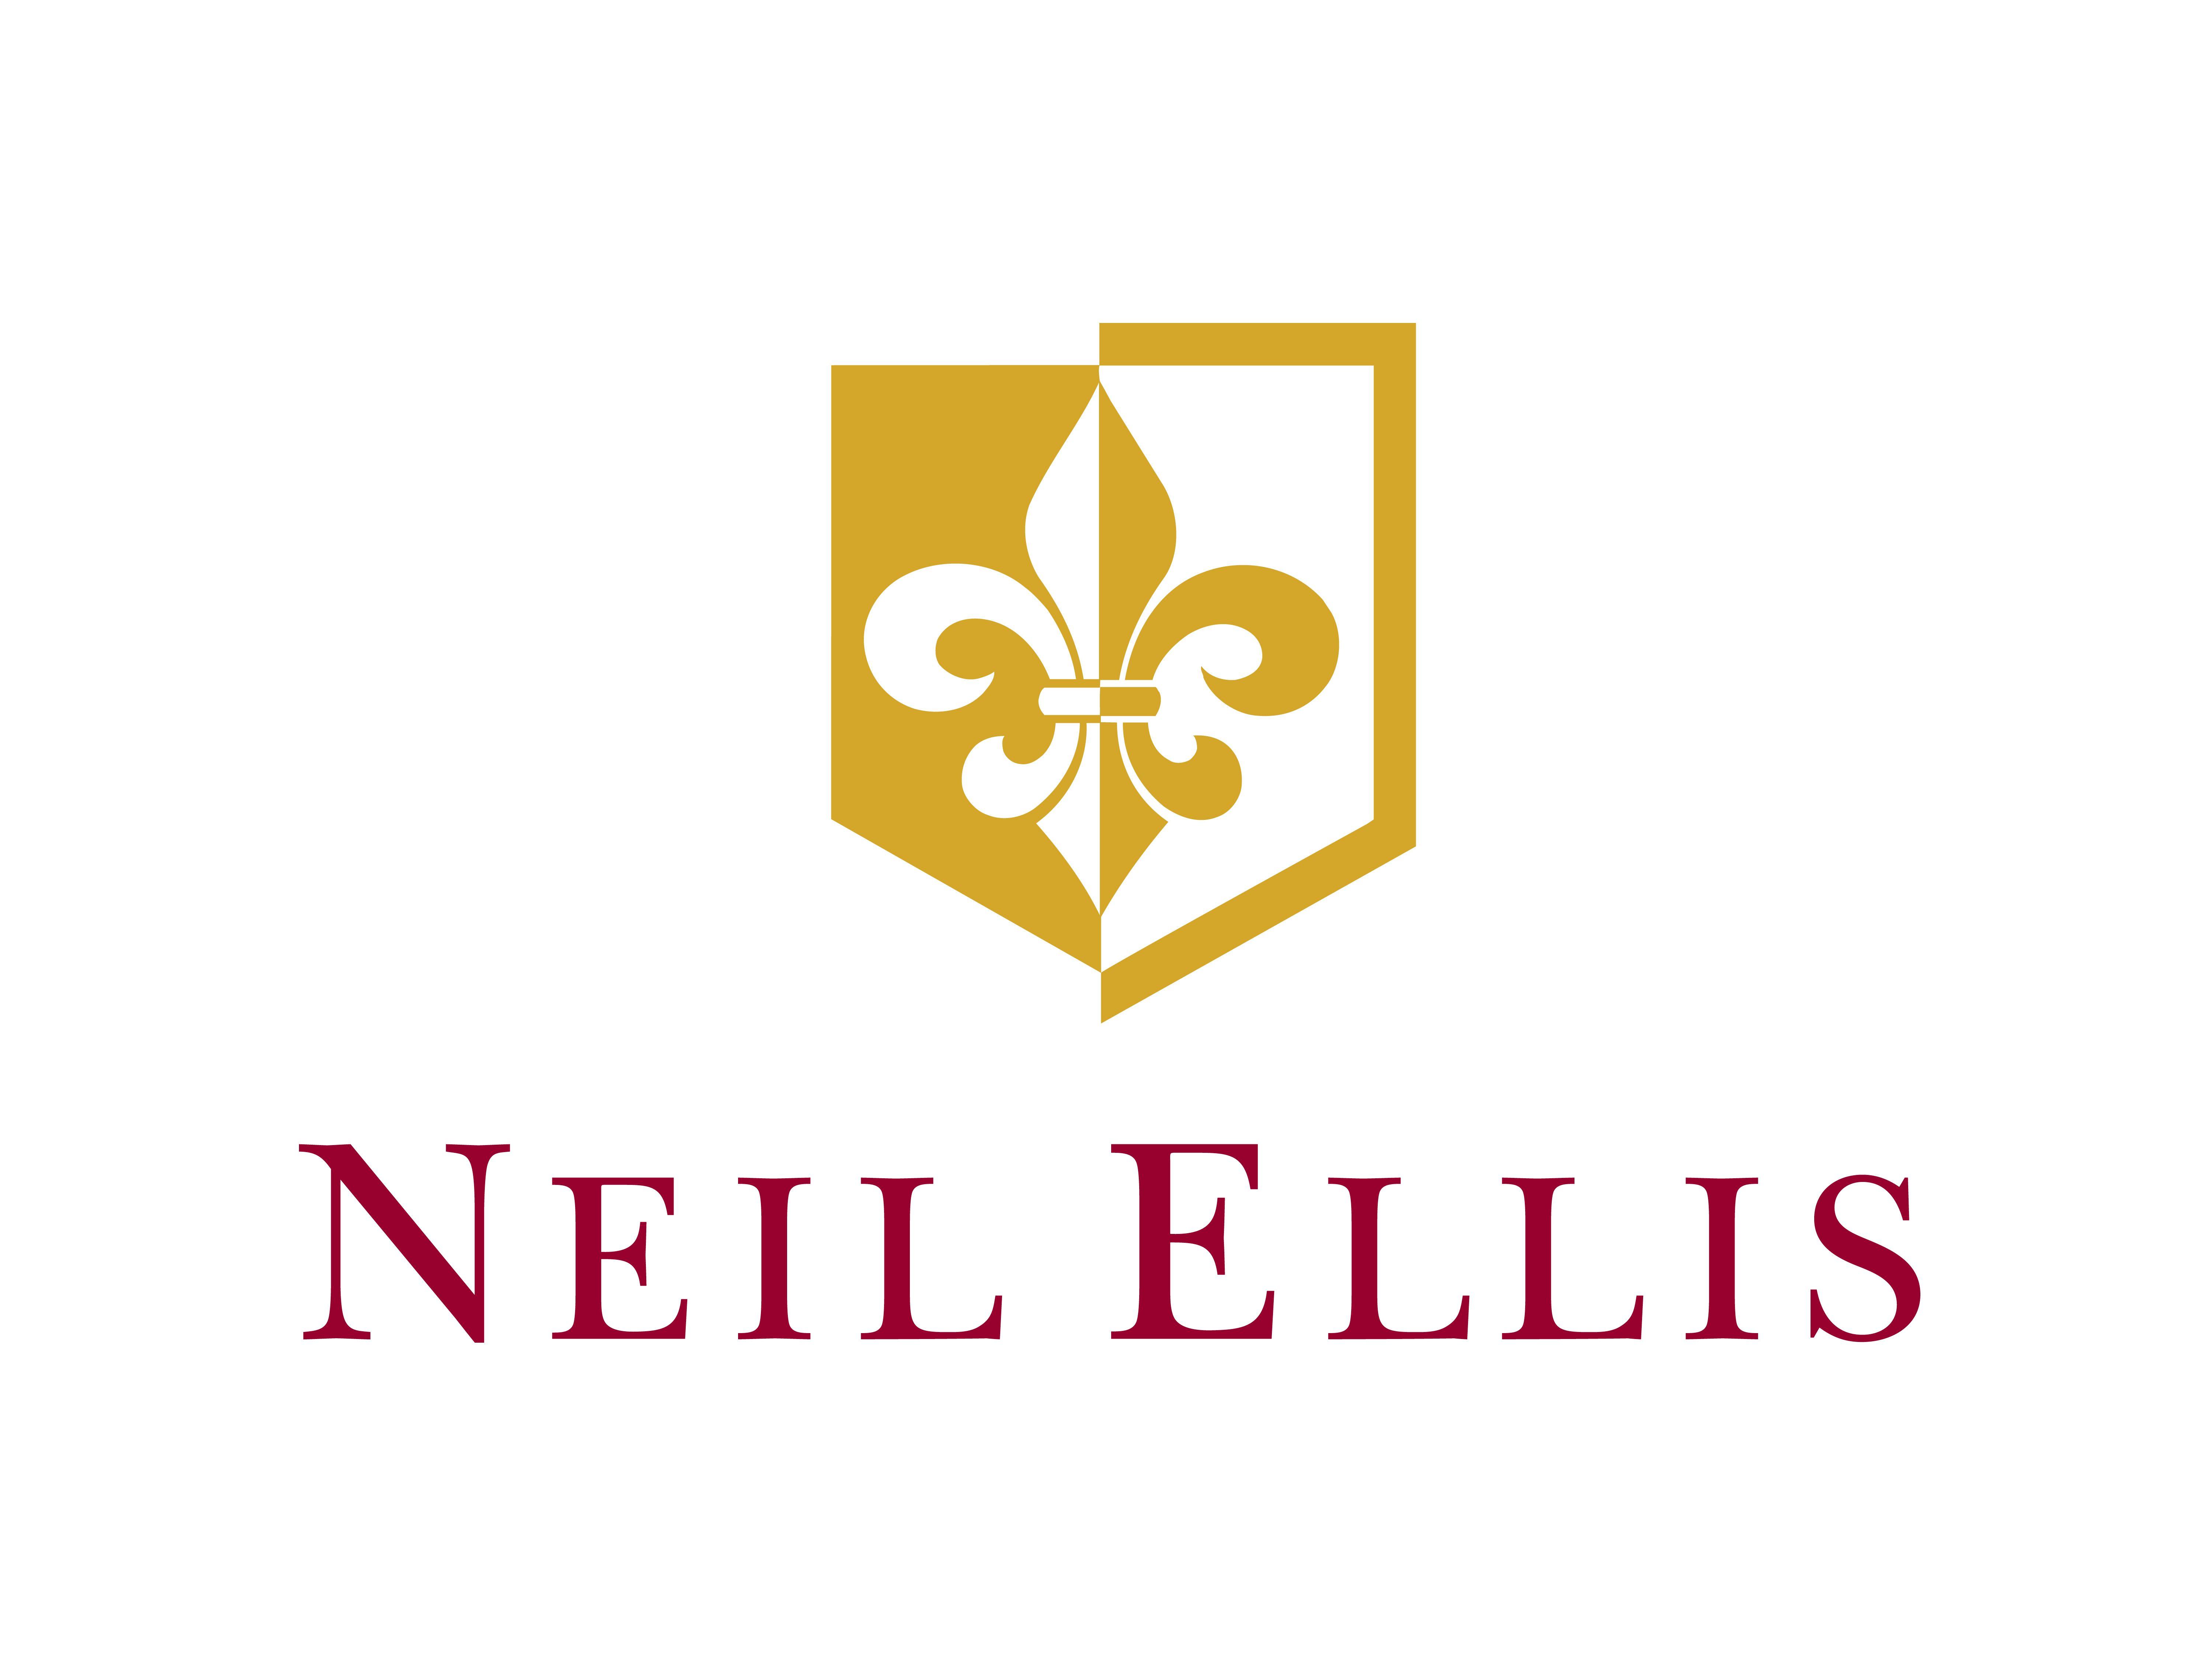 Ellis Logo - Neil Ellis joins Gonzalez Byass UK - Gonzalez Byass